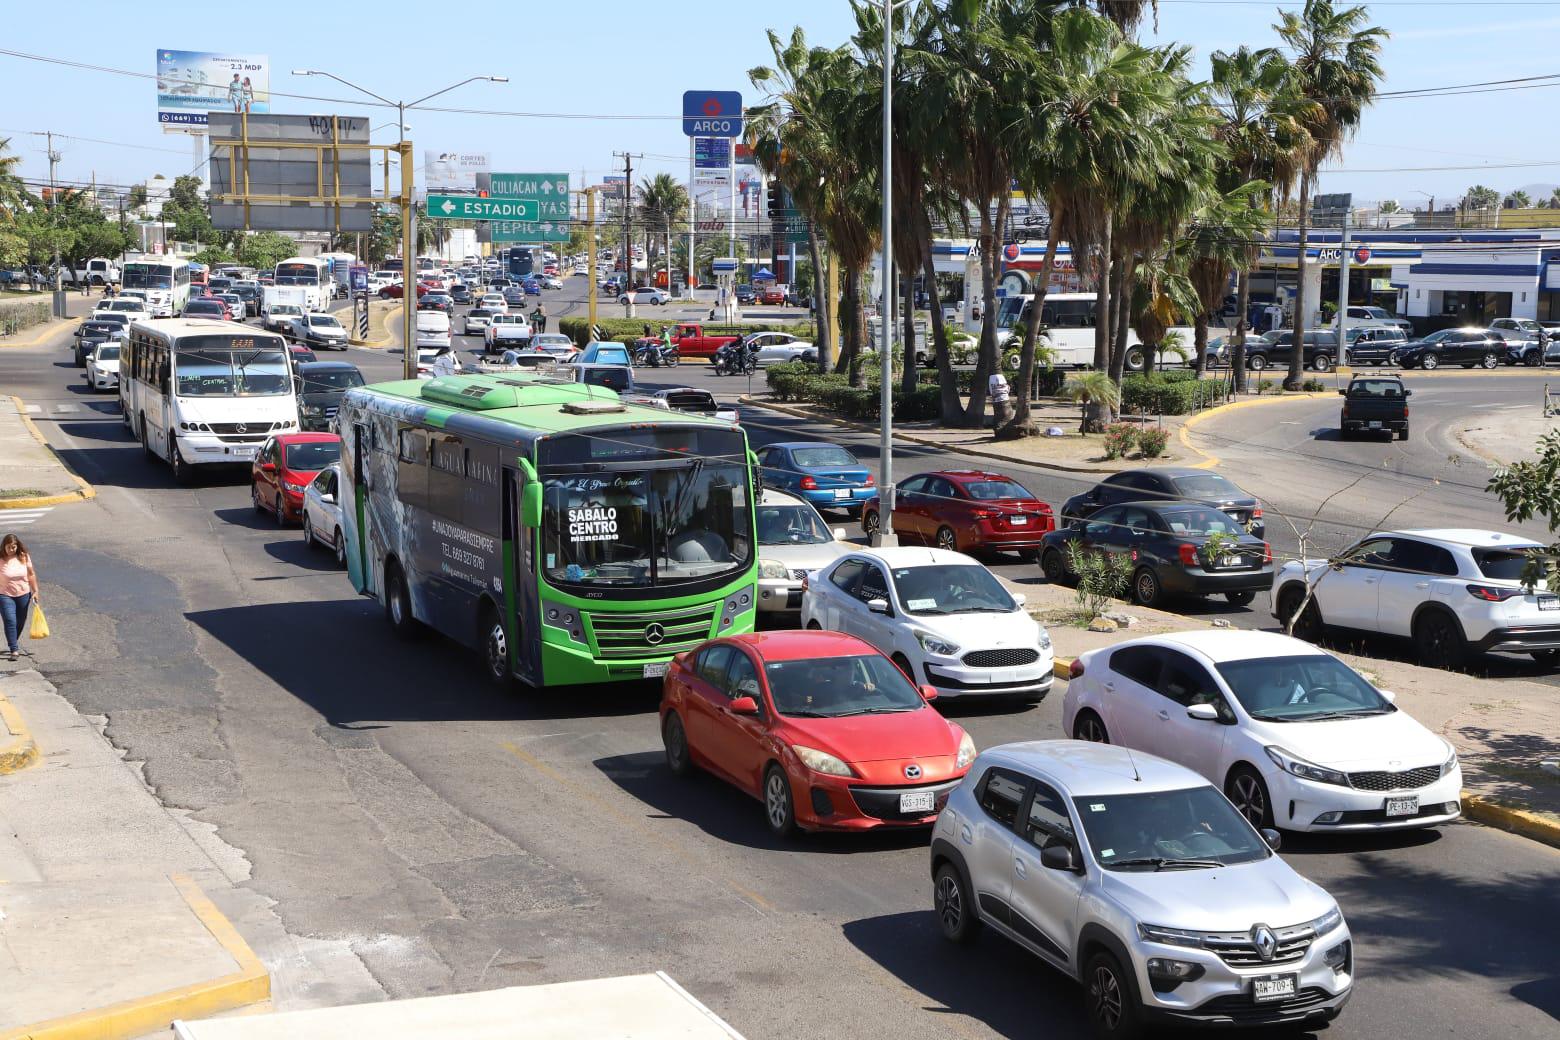 $!Presenta Mazatlán caos vial por segundo día consecutivo por el Triatlón